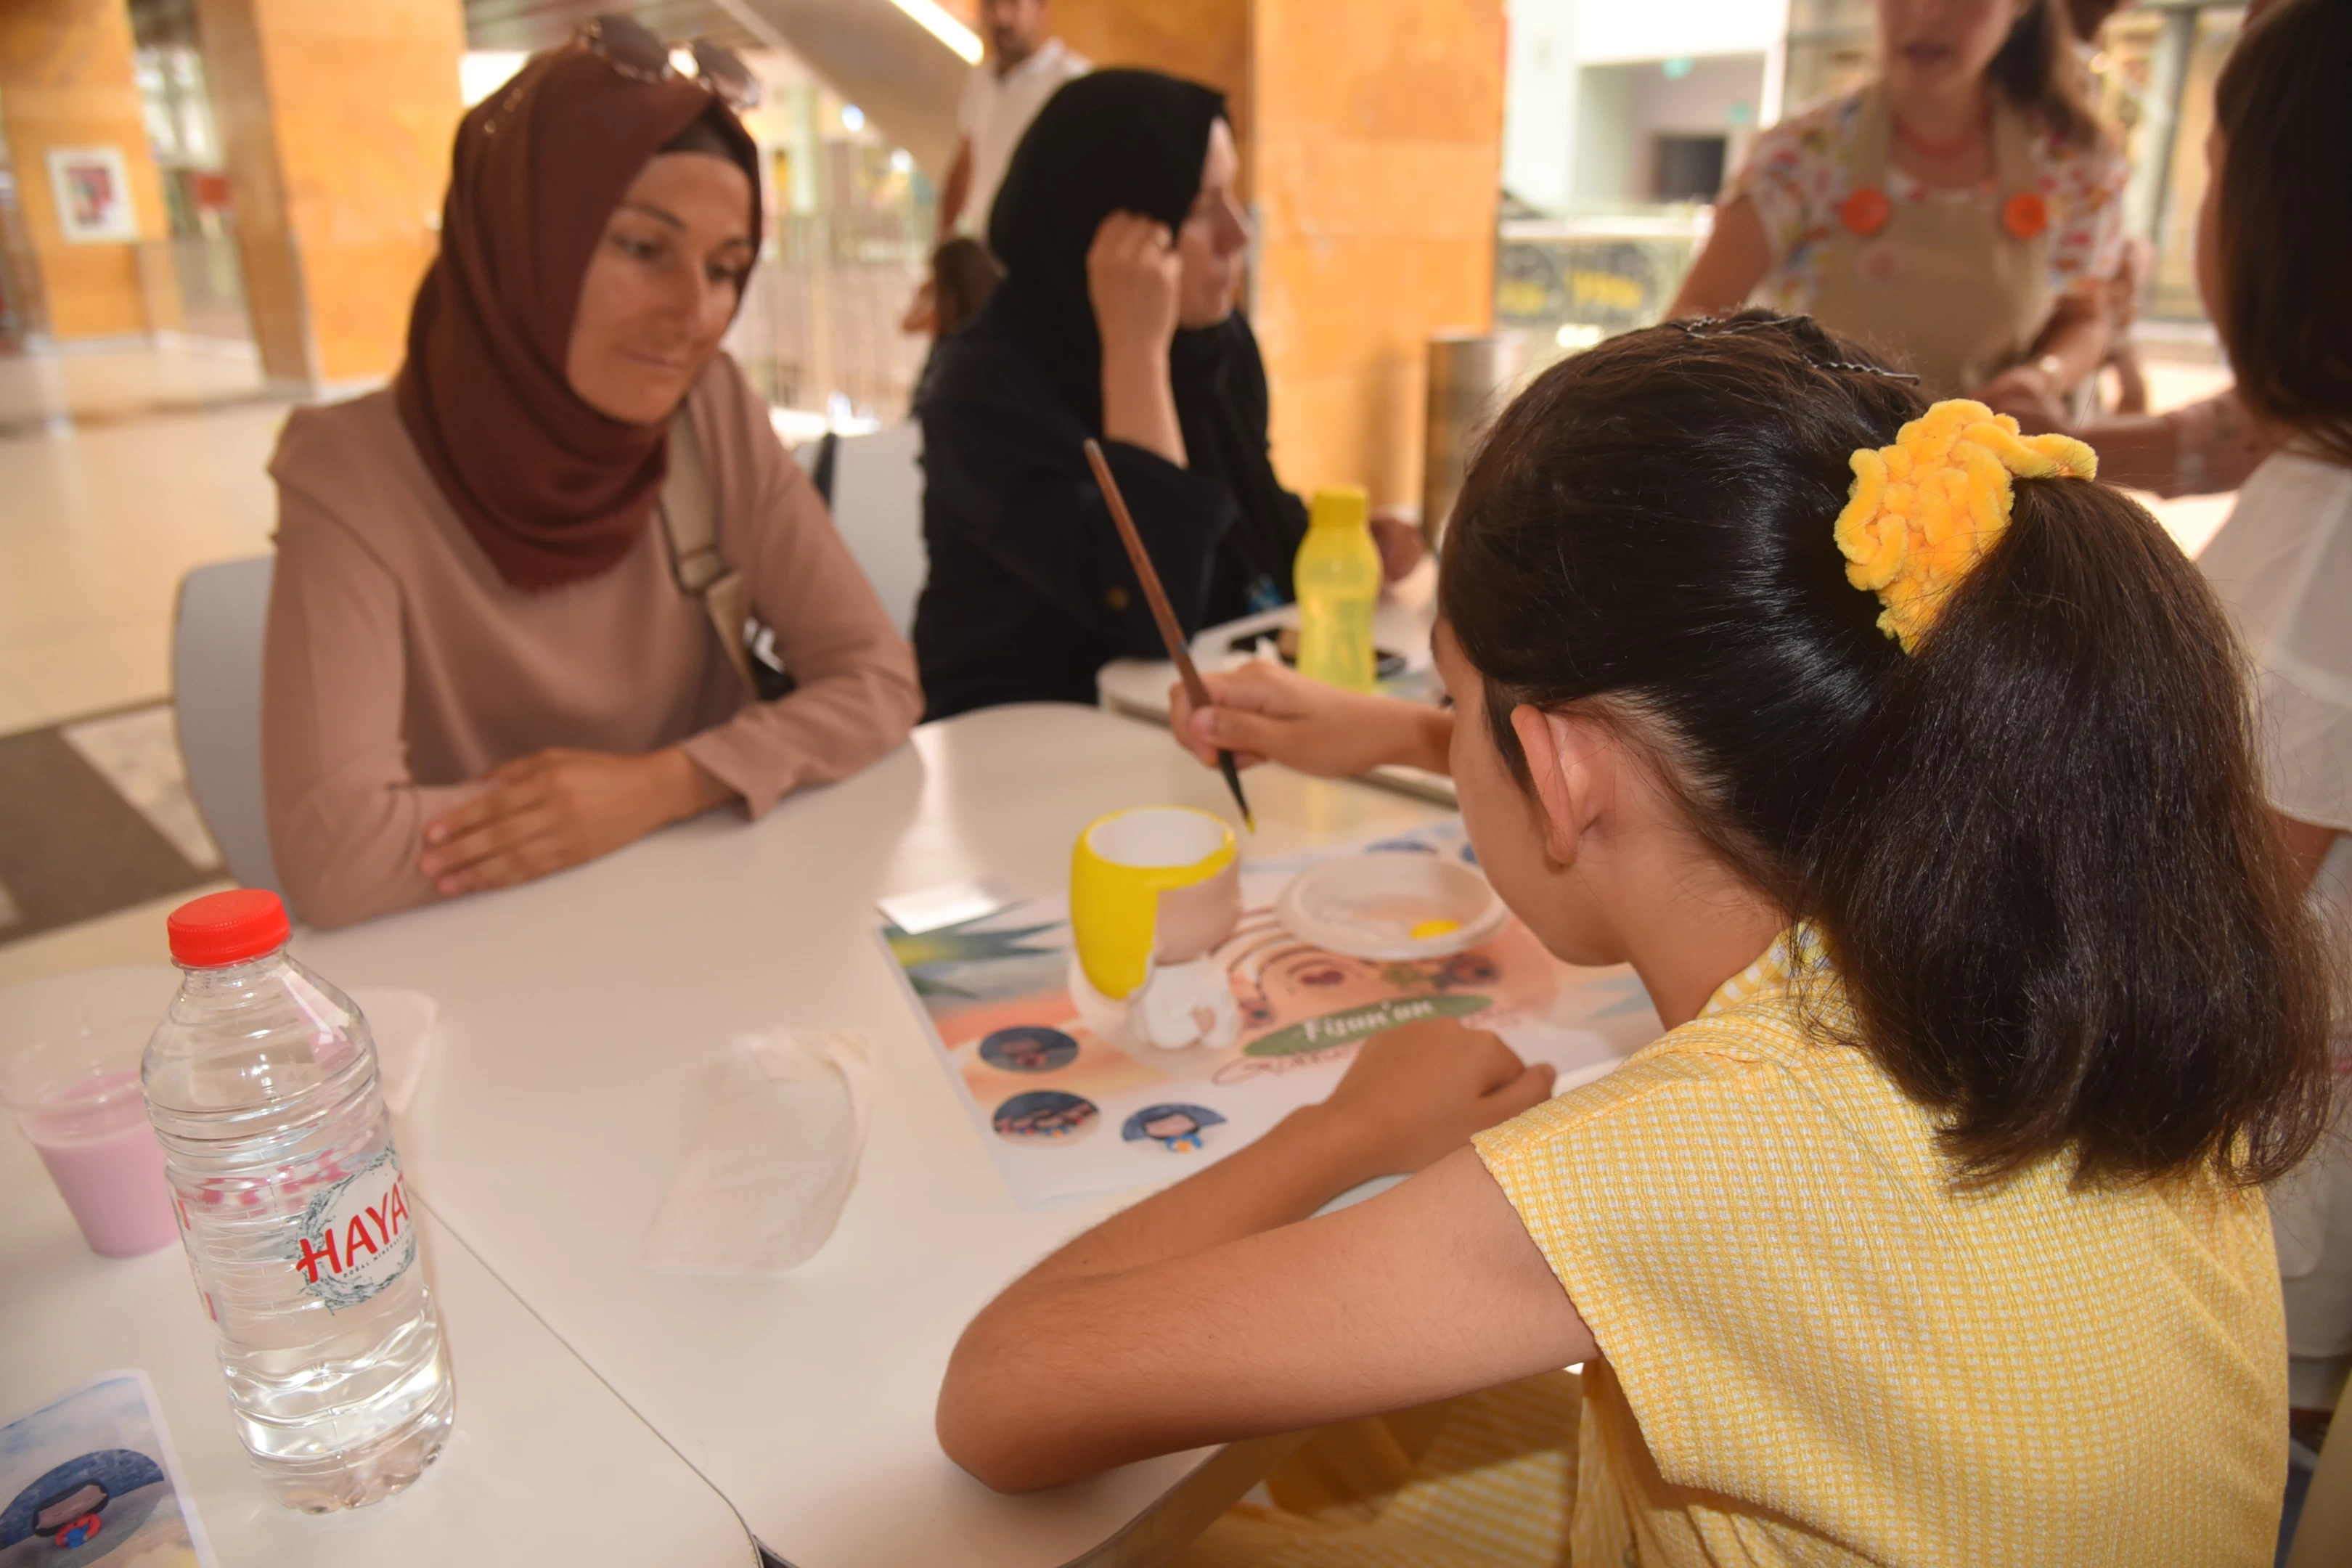 BAŞKEM: Başiskele Kadın El Emeği Mağazası